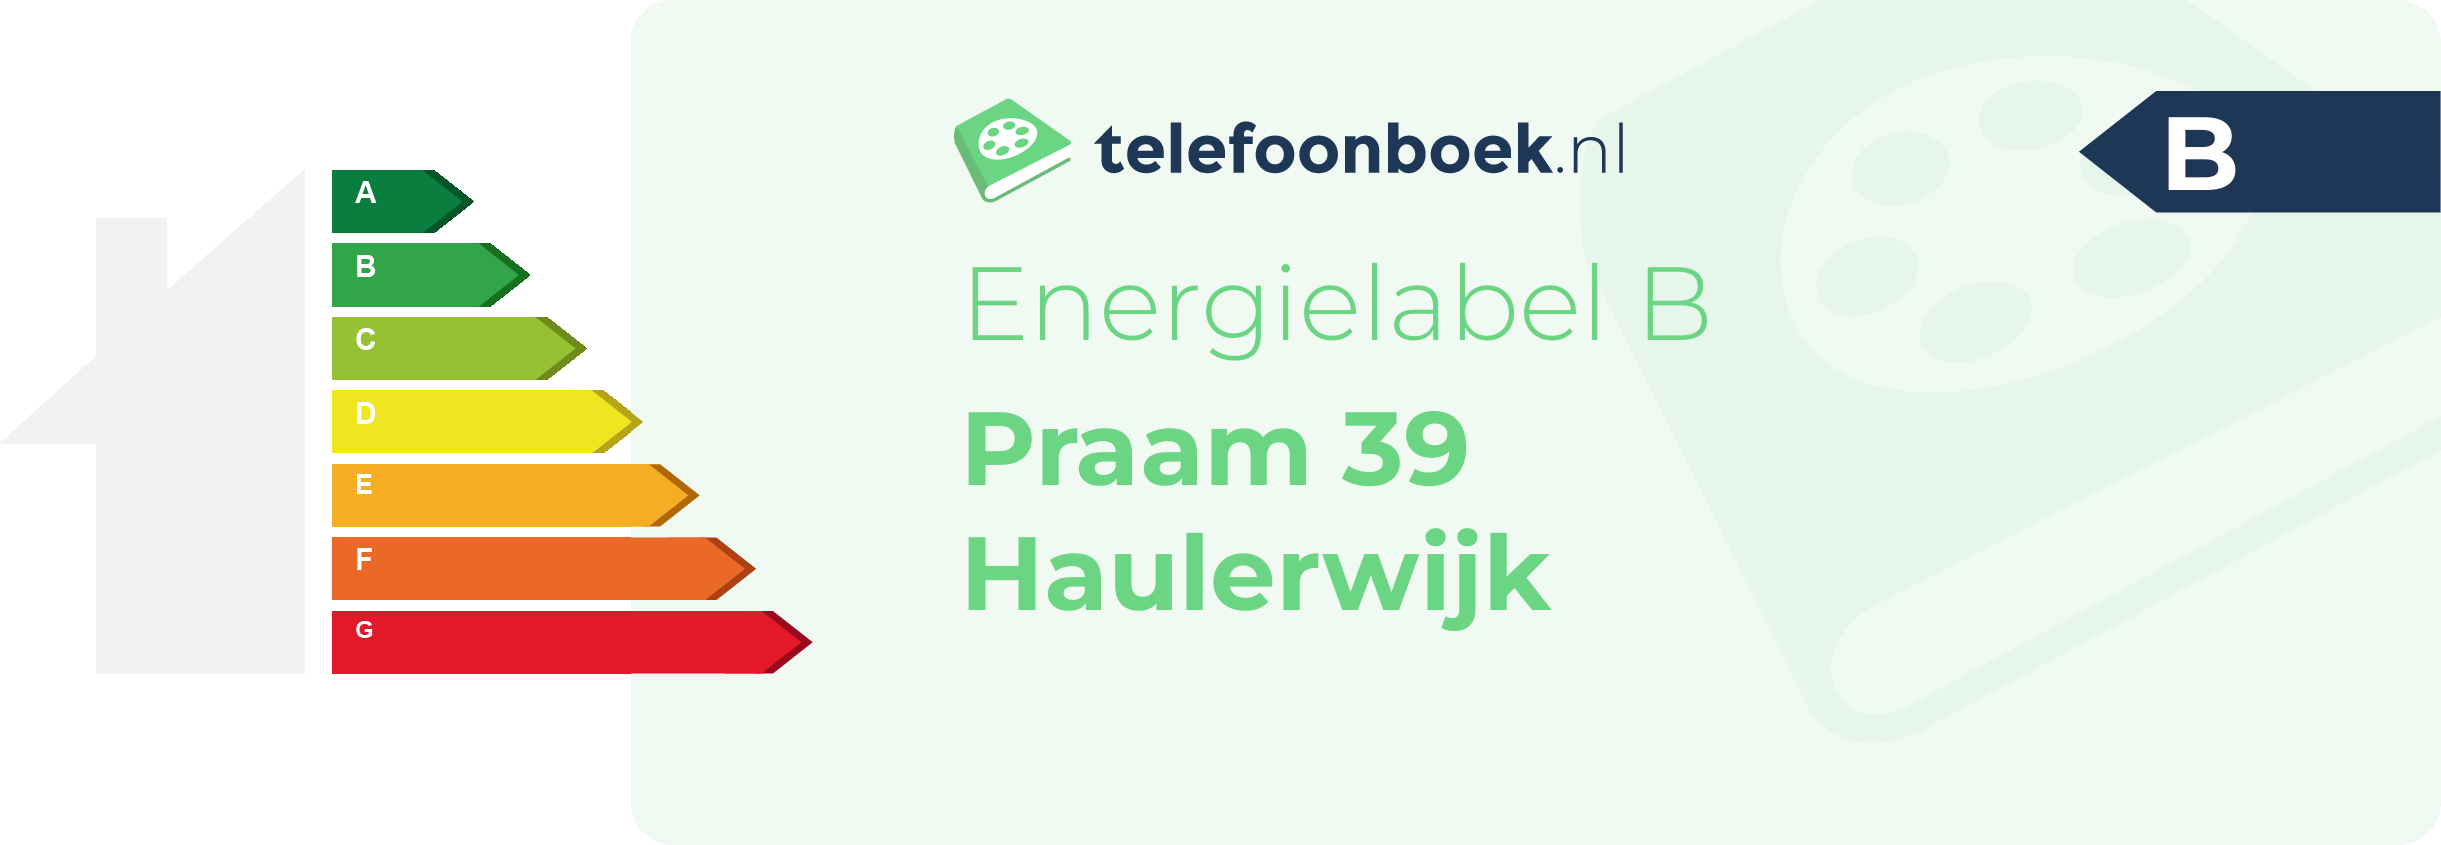 Energielabel Praam 39 Haulerwijk